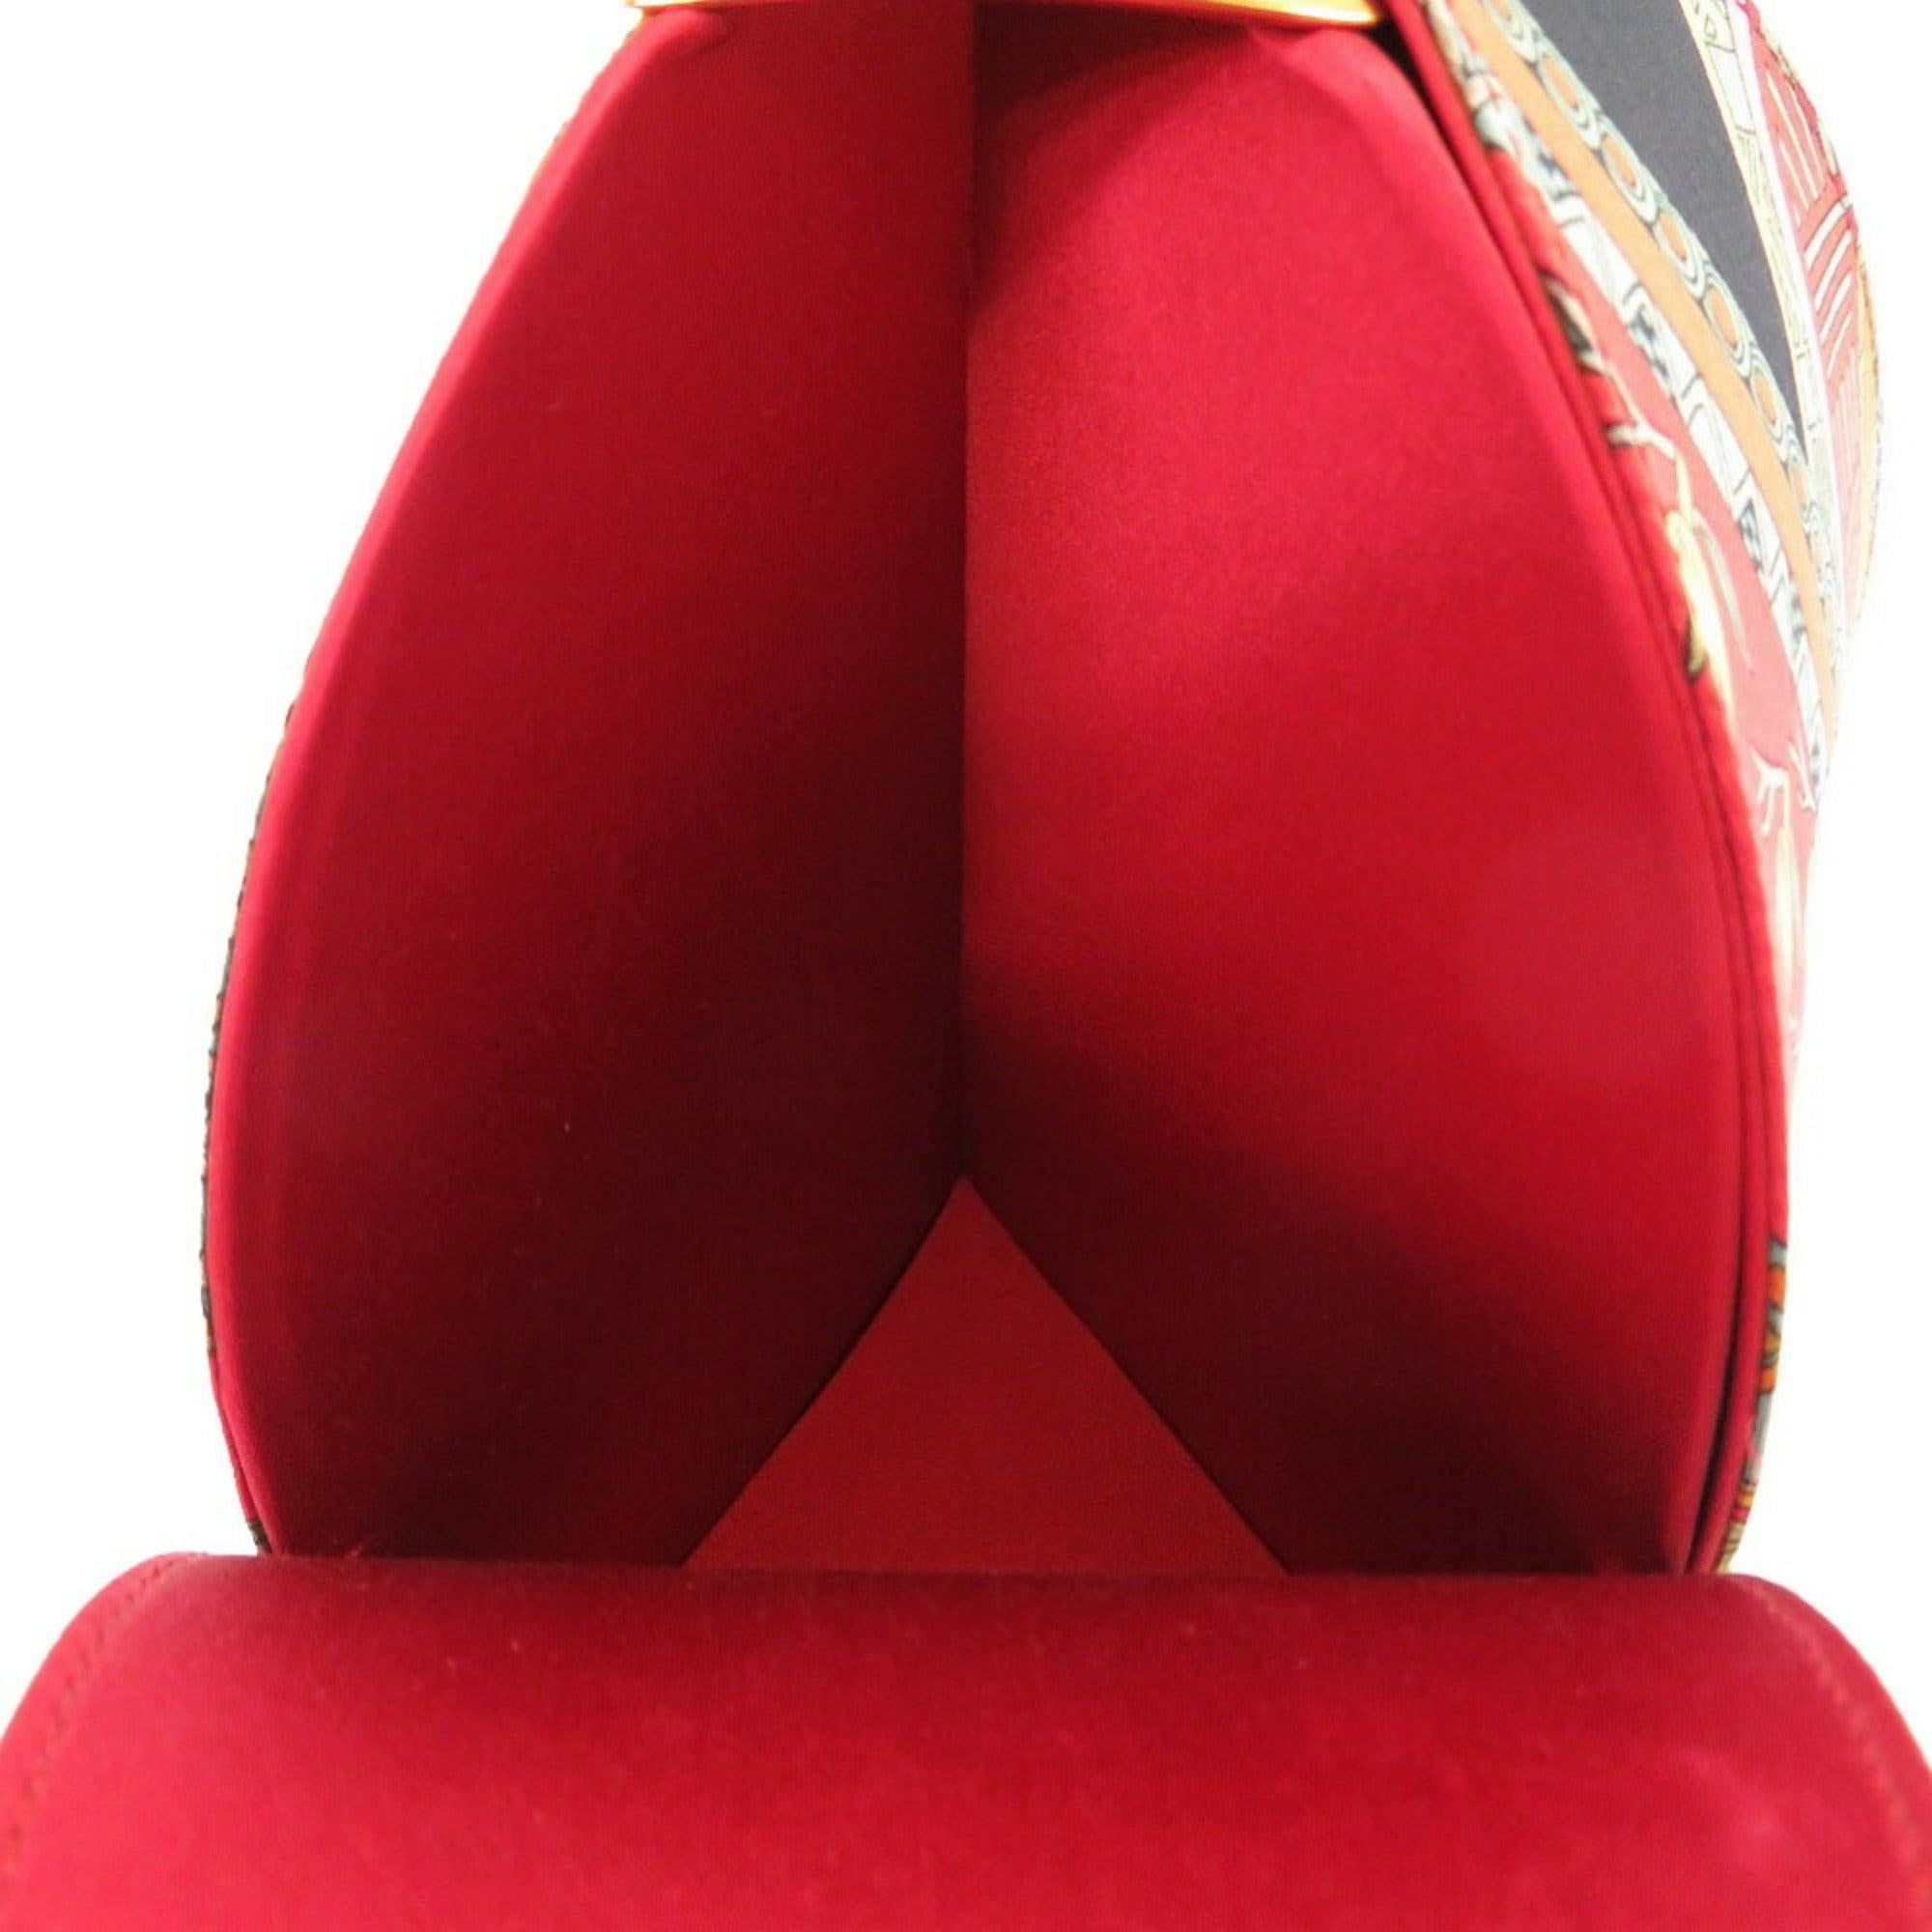 Hermes Art des Steppes Satin Red Shoulder Bag 0238 For Sale 2